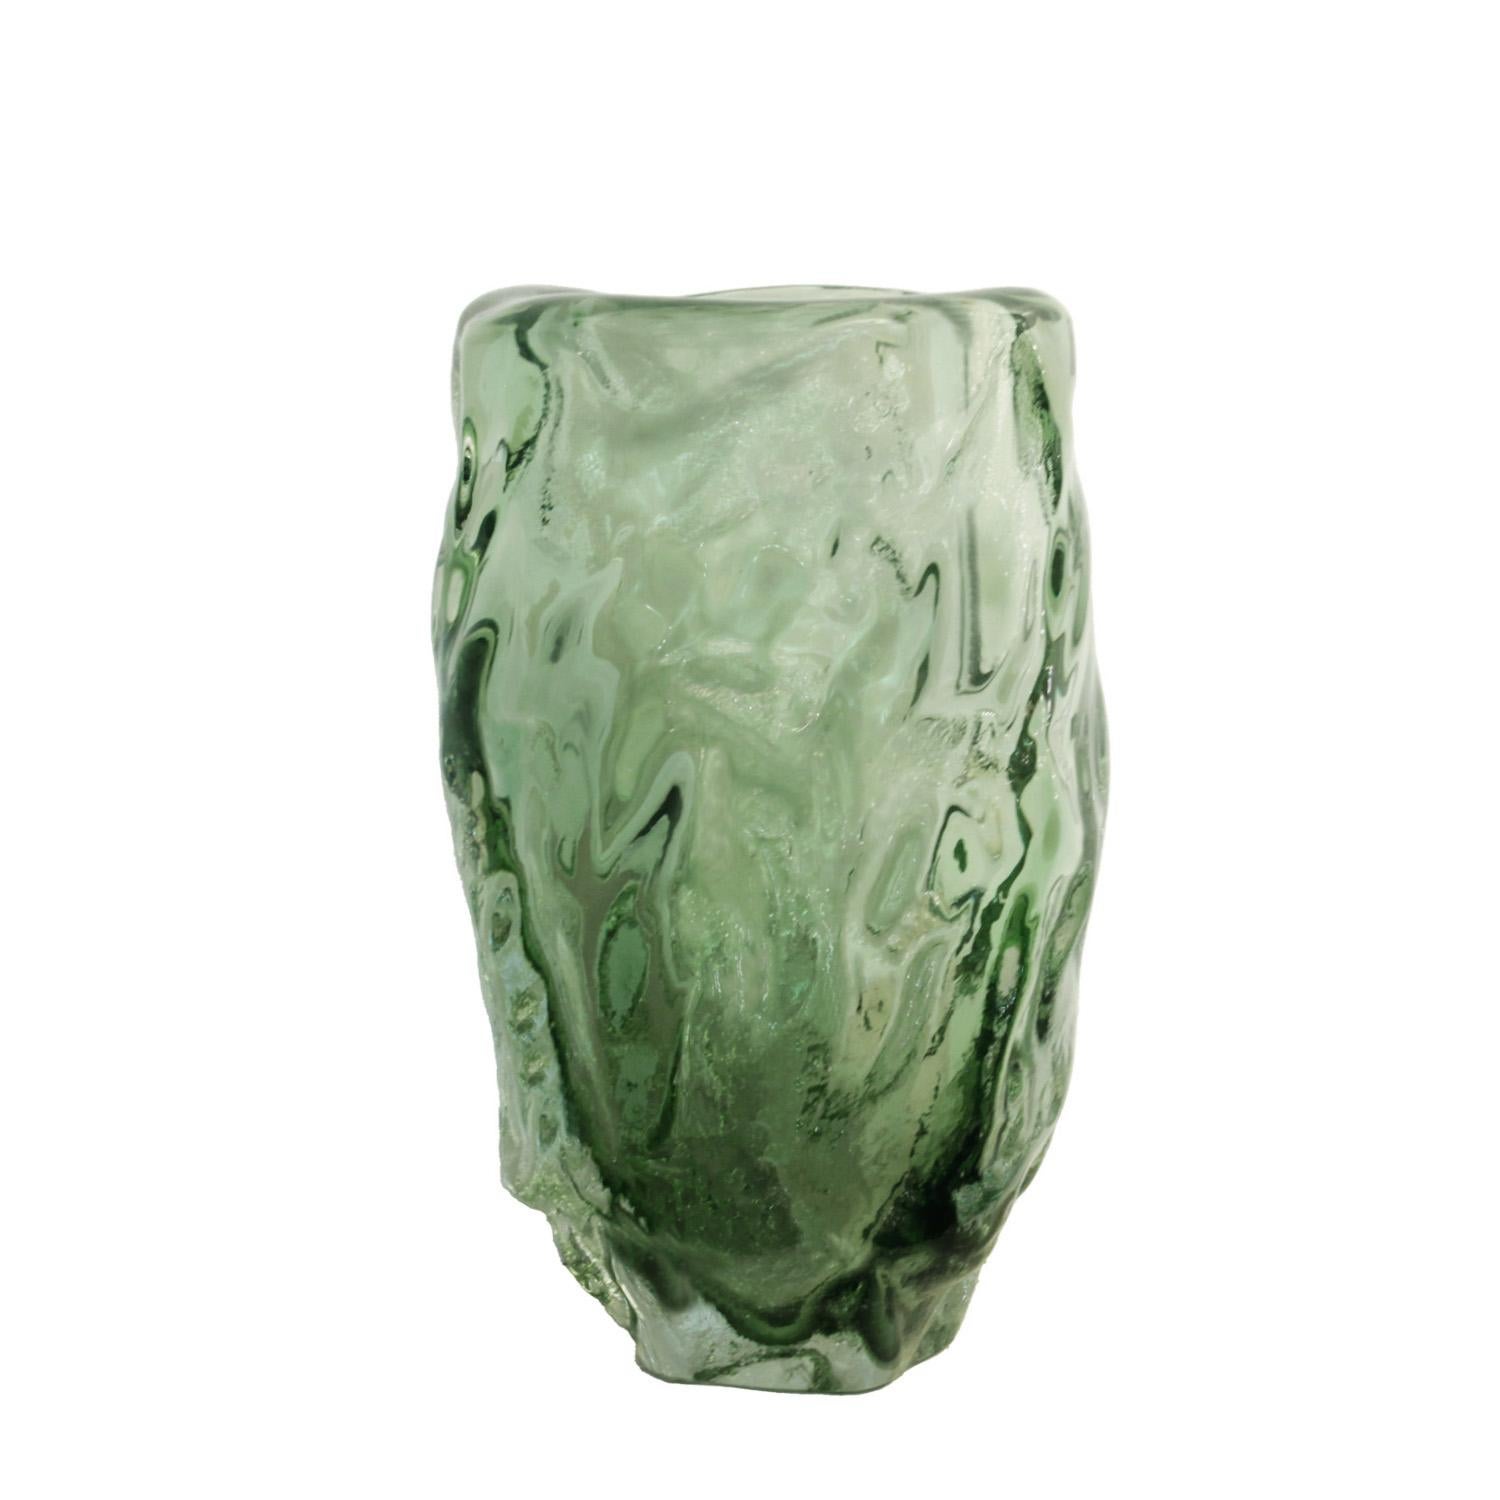 Vase en verre de Murano sommerso vert, fabriqué à la main, inspiré par les œuvres de l'artiste abstrait italien Alberto Burri.  Italie 2023